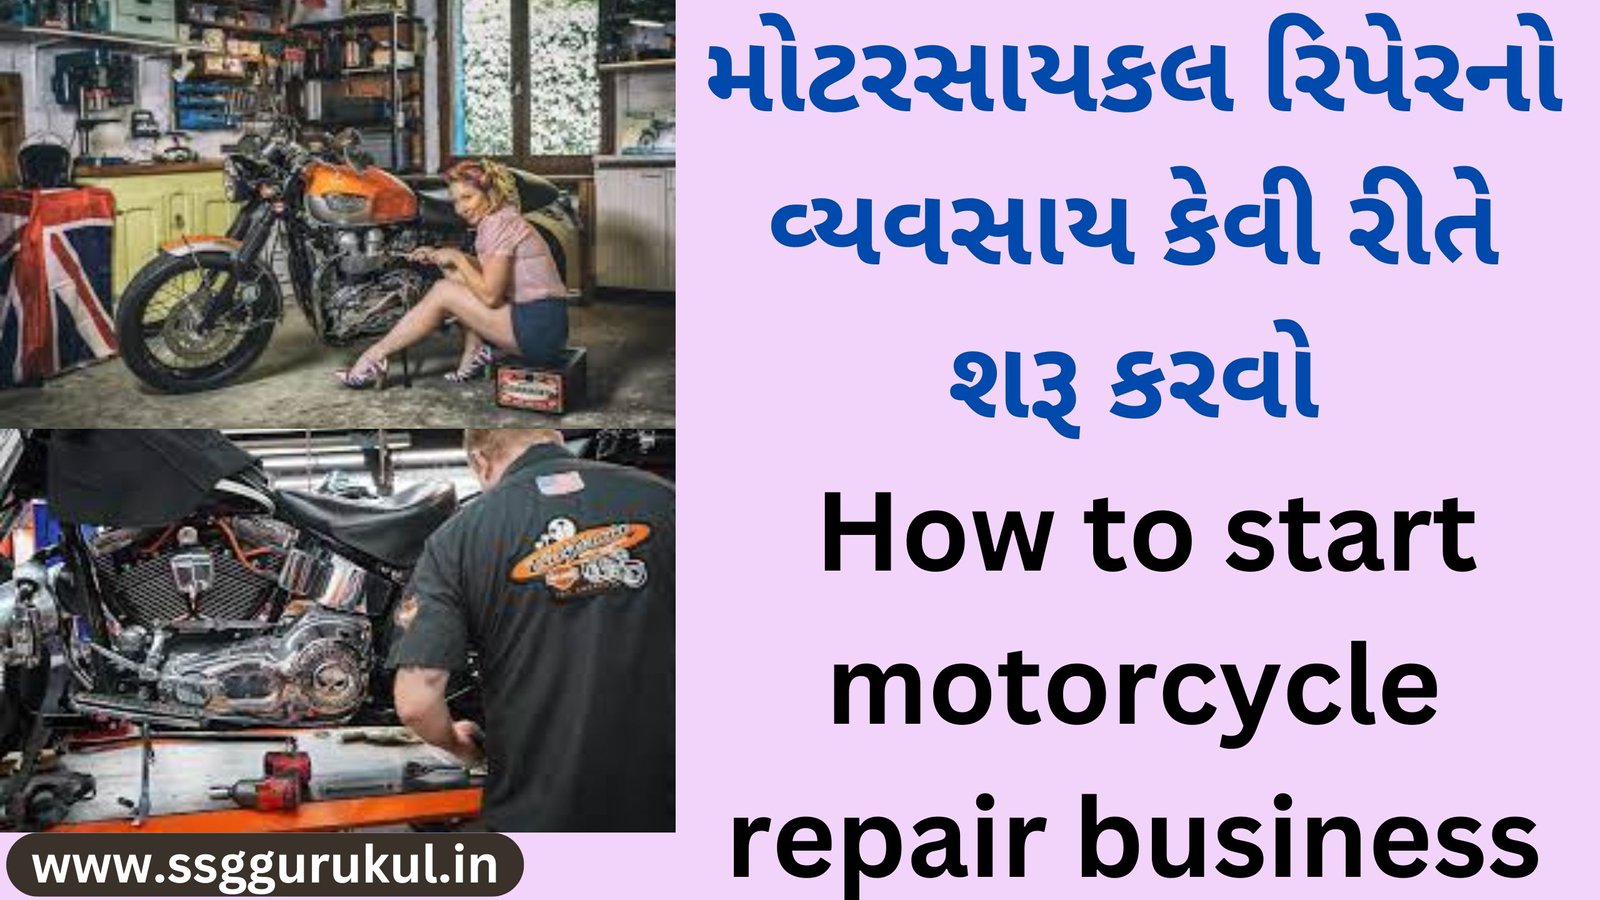 મોટરસાયકલ રિપેરનો વ્યવસાય કેવી રીતે શરૂ કરવો How to start motorcycle repair business